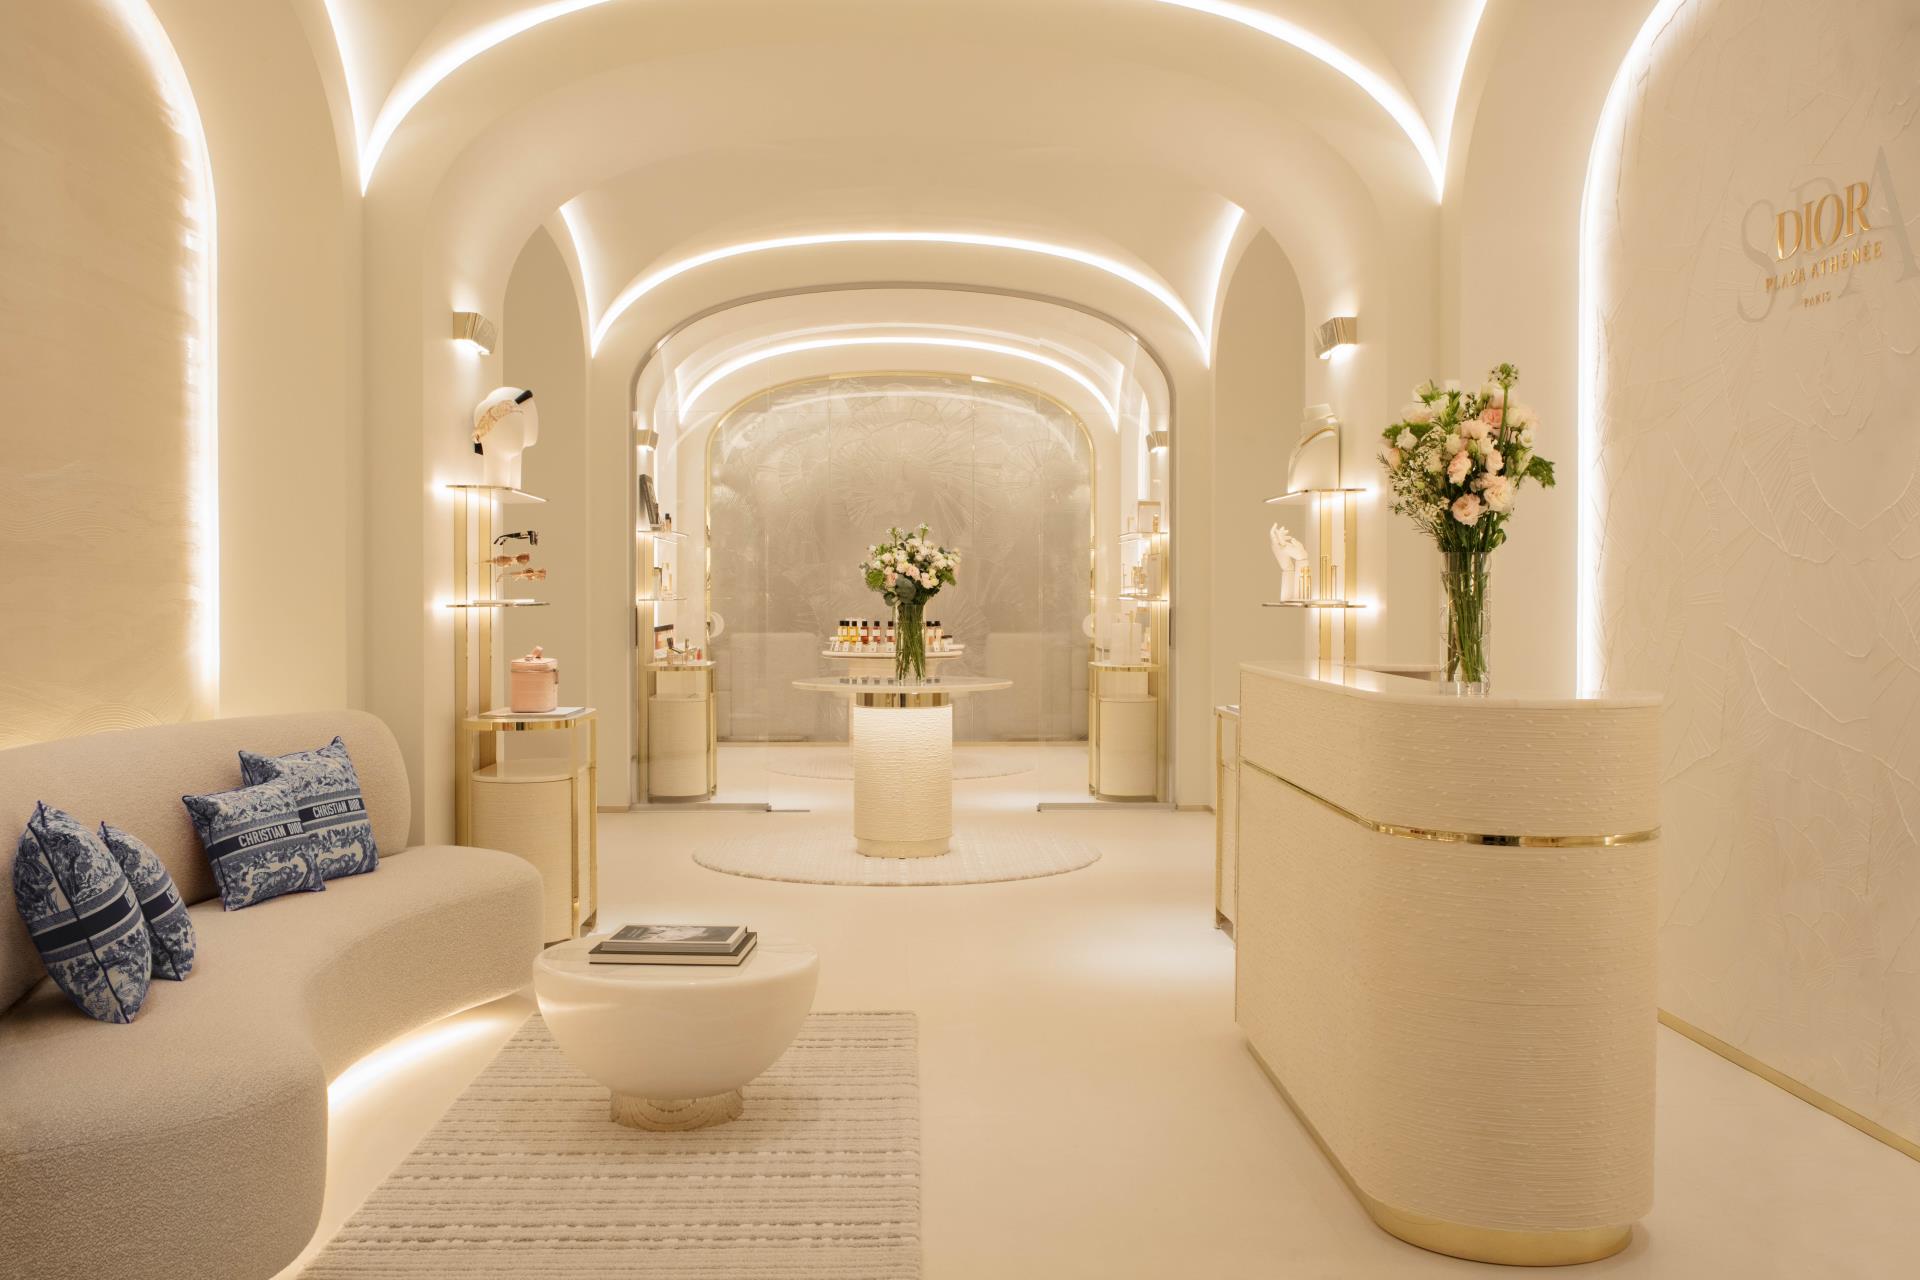 Hotel Plaza Athénée lança novo Dior Spa  LÍDER.INC - Notícias, podcasts,  vídeos e muito conteúdo